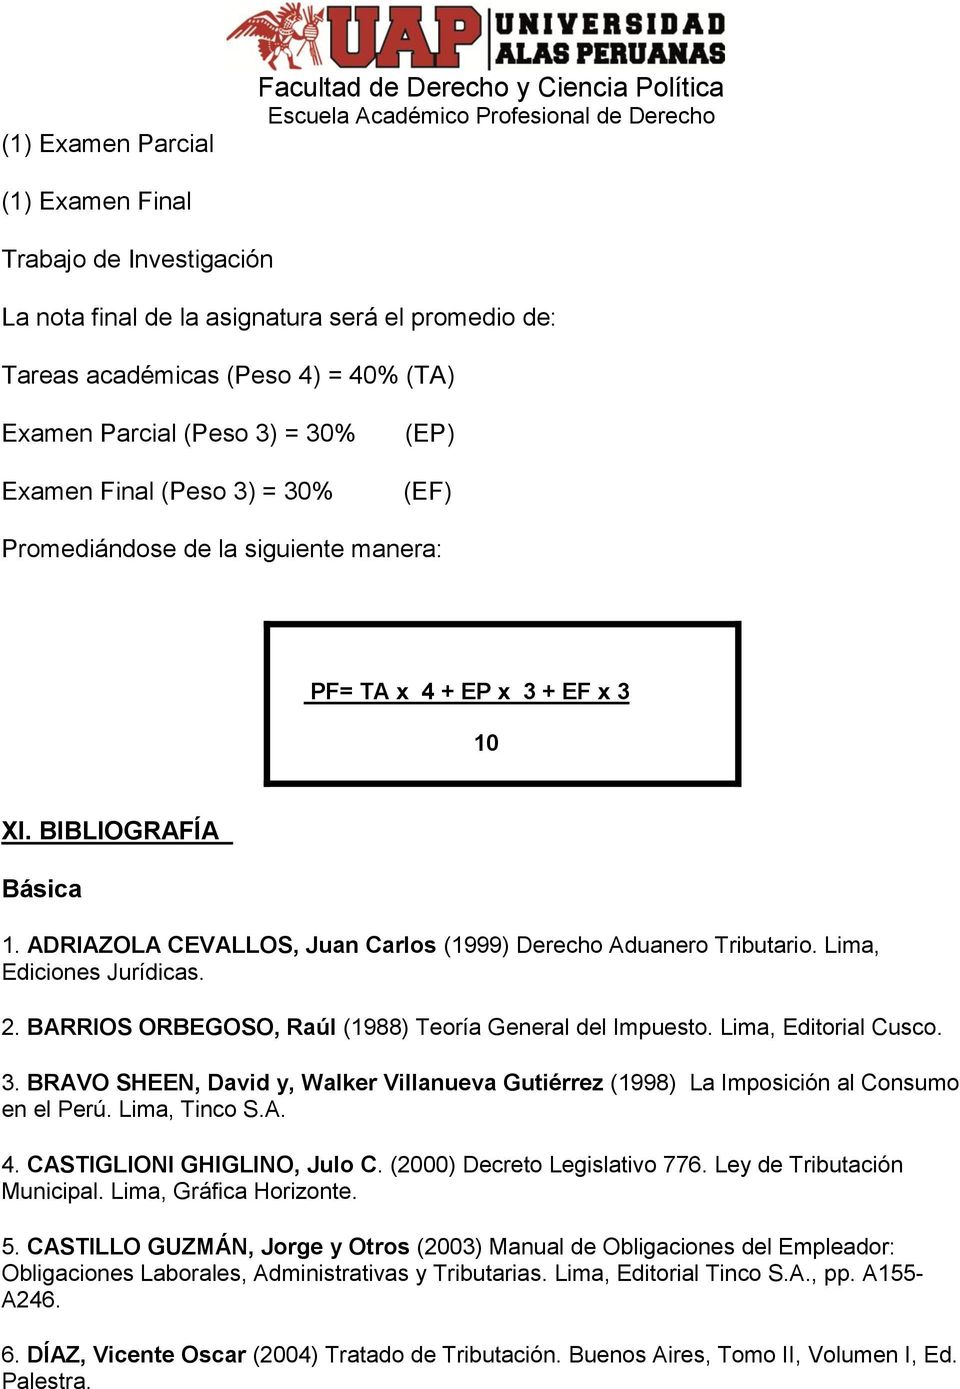 ADRIAZOLA CEVALLOS, Juan Carlos (1999) Derecho Aduanero Tributario. Lima, Ediciones Jurídicas. 2. BARRIOS ORBEGOSO, Raúl (1988) Teoría General del Impuesto. Lima, Editorial Cusco. 3.